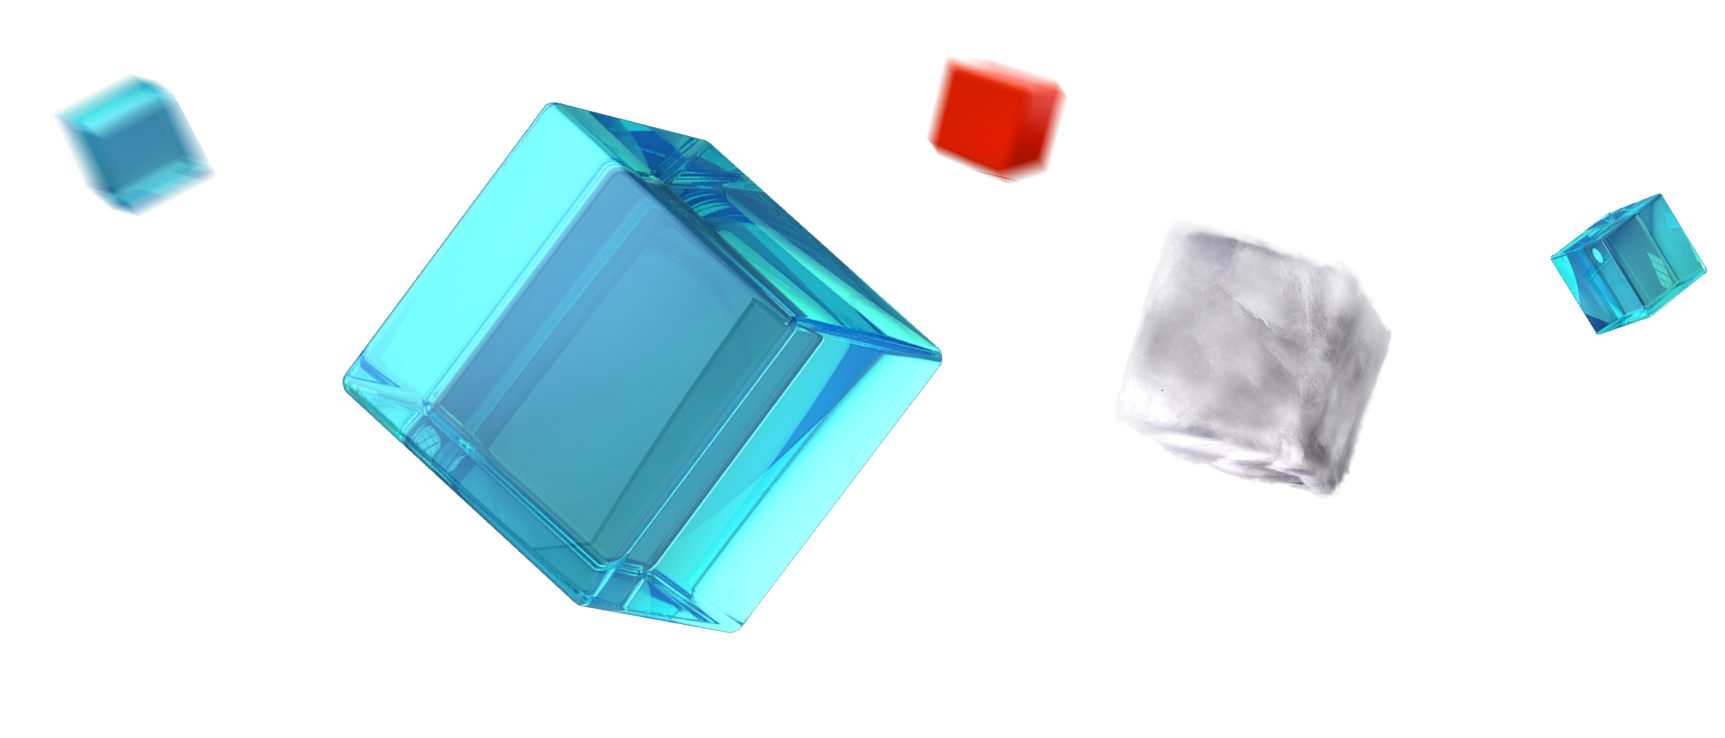 Transparent Cubes